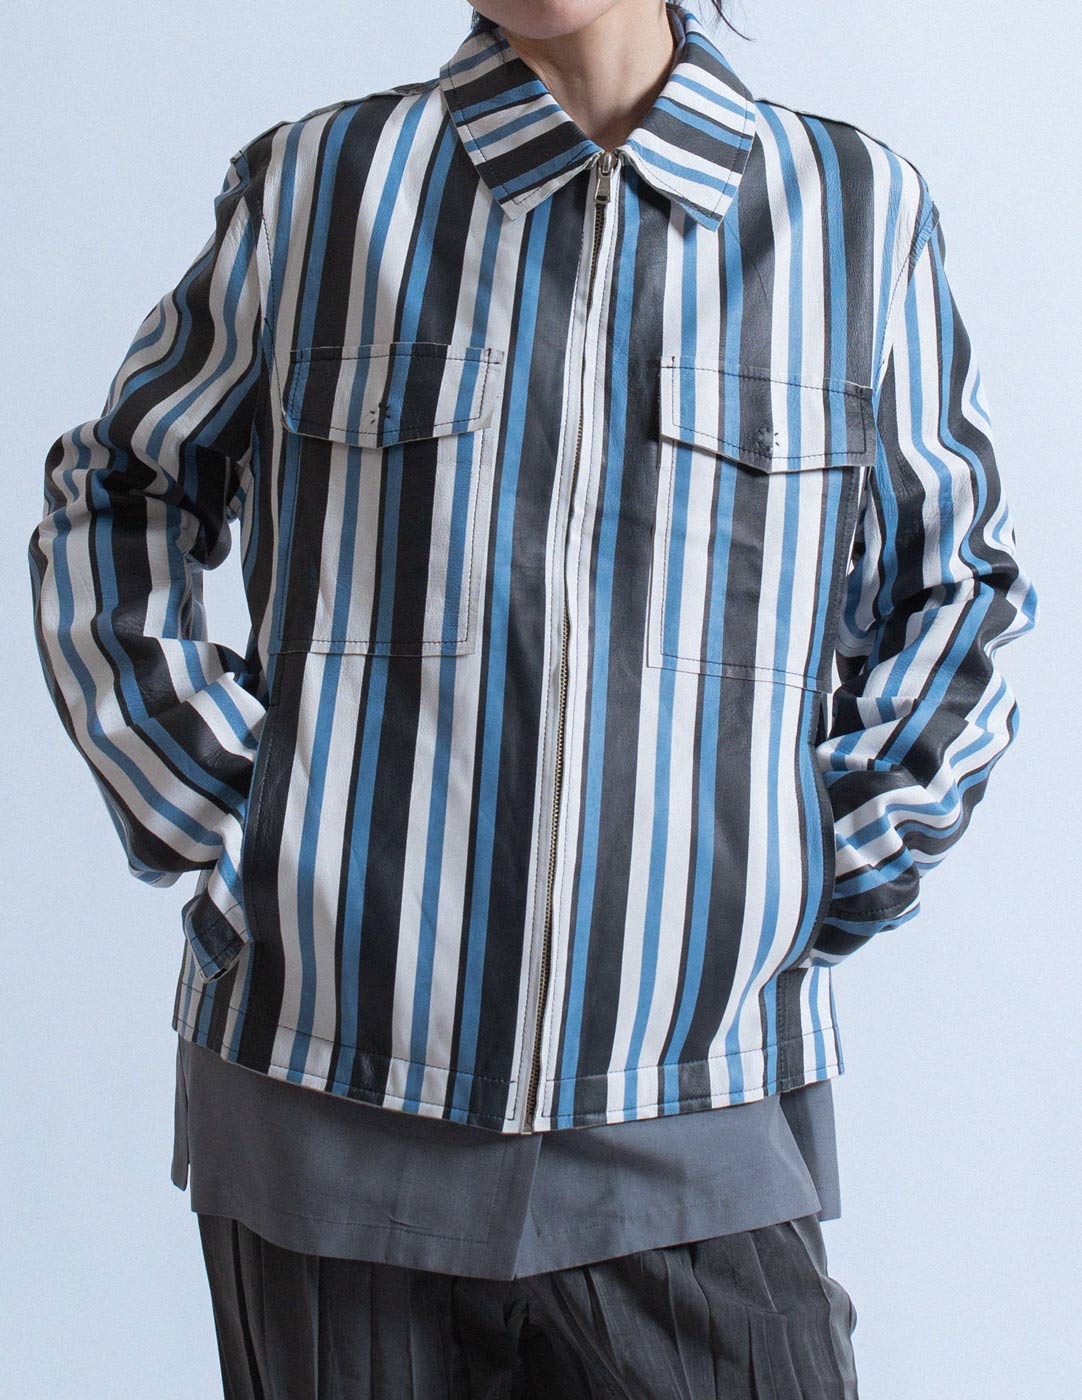 D&G vintage striped leather jacket front detail